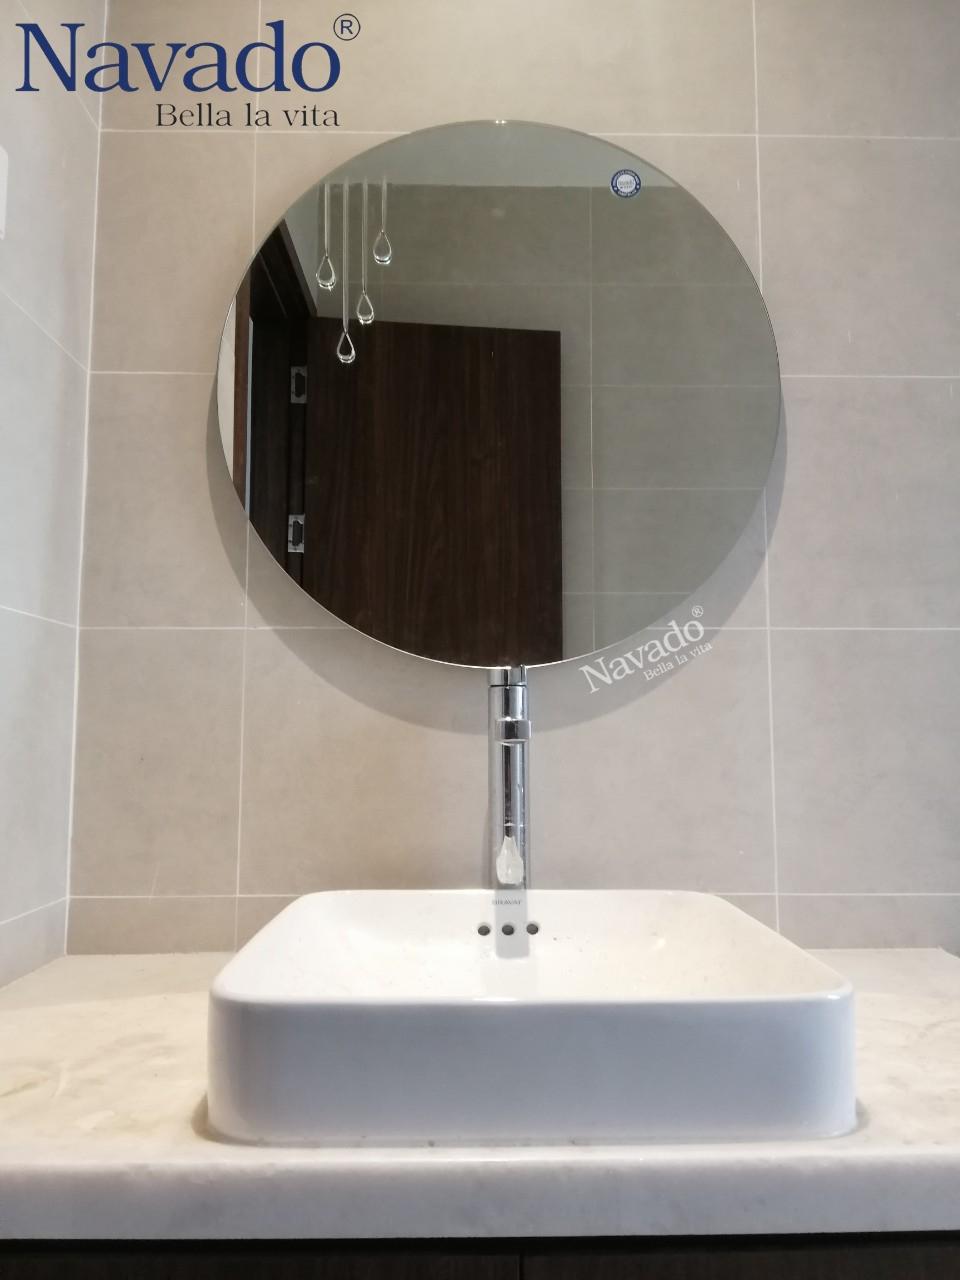 Gương bỉ trang trí nghệ thuật phòng tắm Navado: Bạn muốn biến phòng tắm của mình thành một không gian thật sang trọng và đẳng cấp? Hãy trang trí bằng gương bỉ nghệ thuật Navado. Với thiết kế tinh tế, độc đáo, gương Navado sẽ là điểm nhấn thu hút mọi ánh nhìn và tạo nên một không gian phòng tắm đẳng cấp.